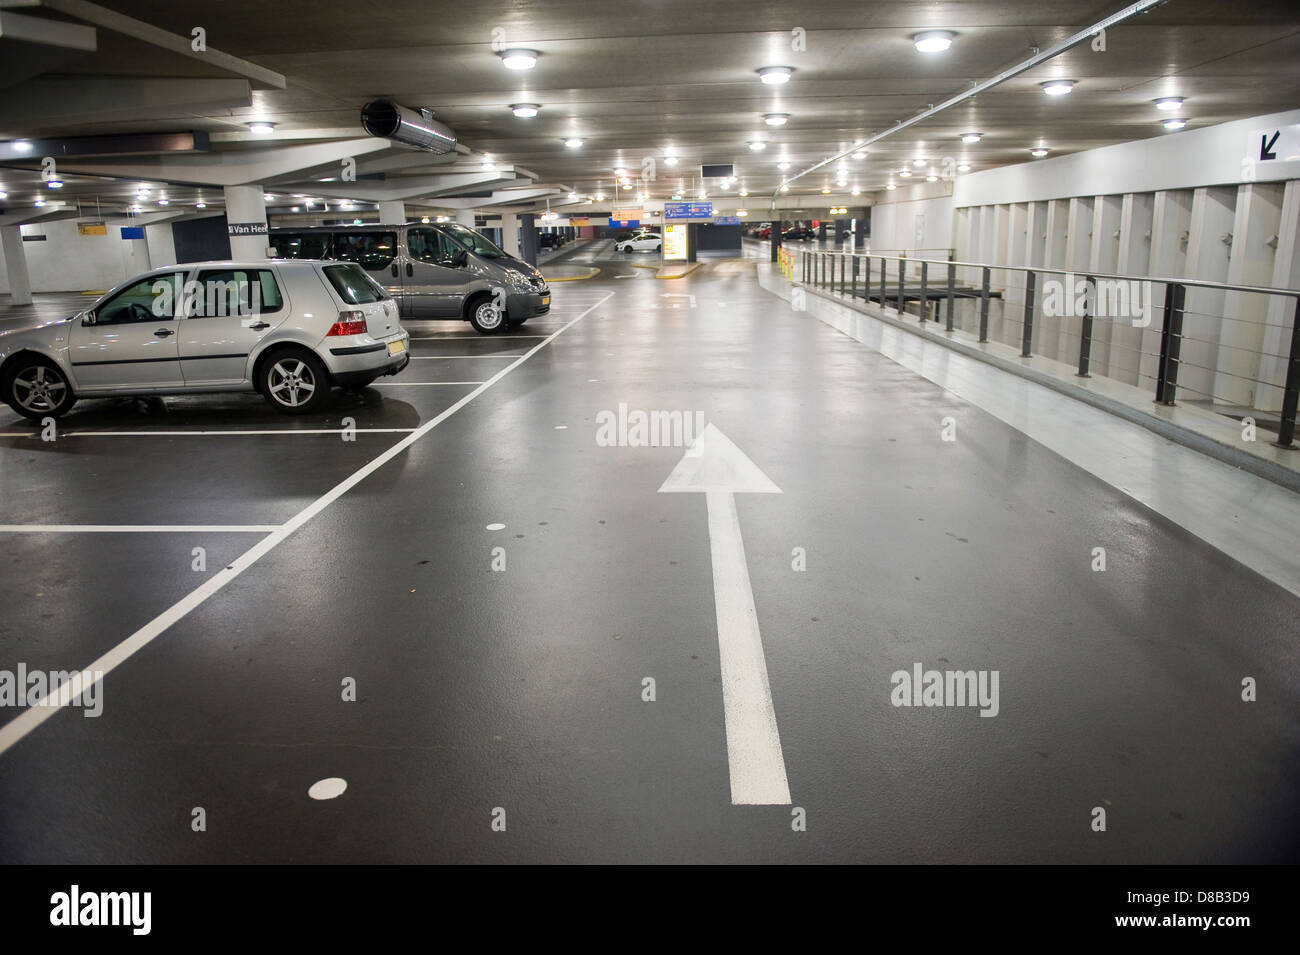 An underground parking garage in the Netherlands Stock Photo